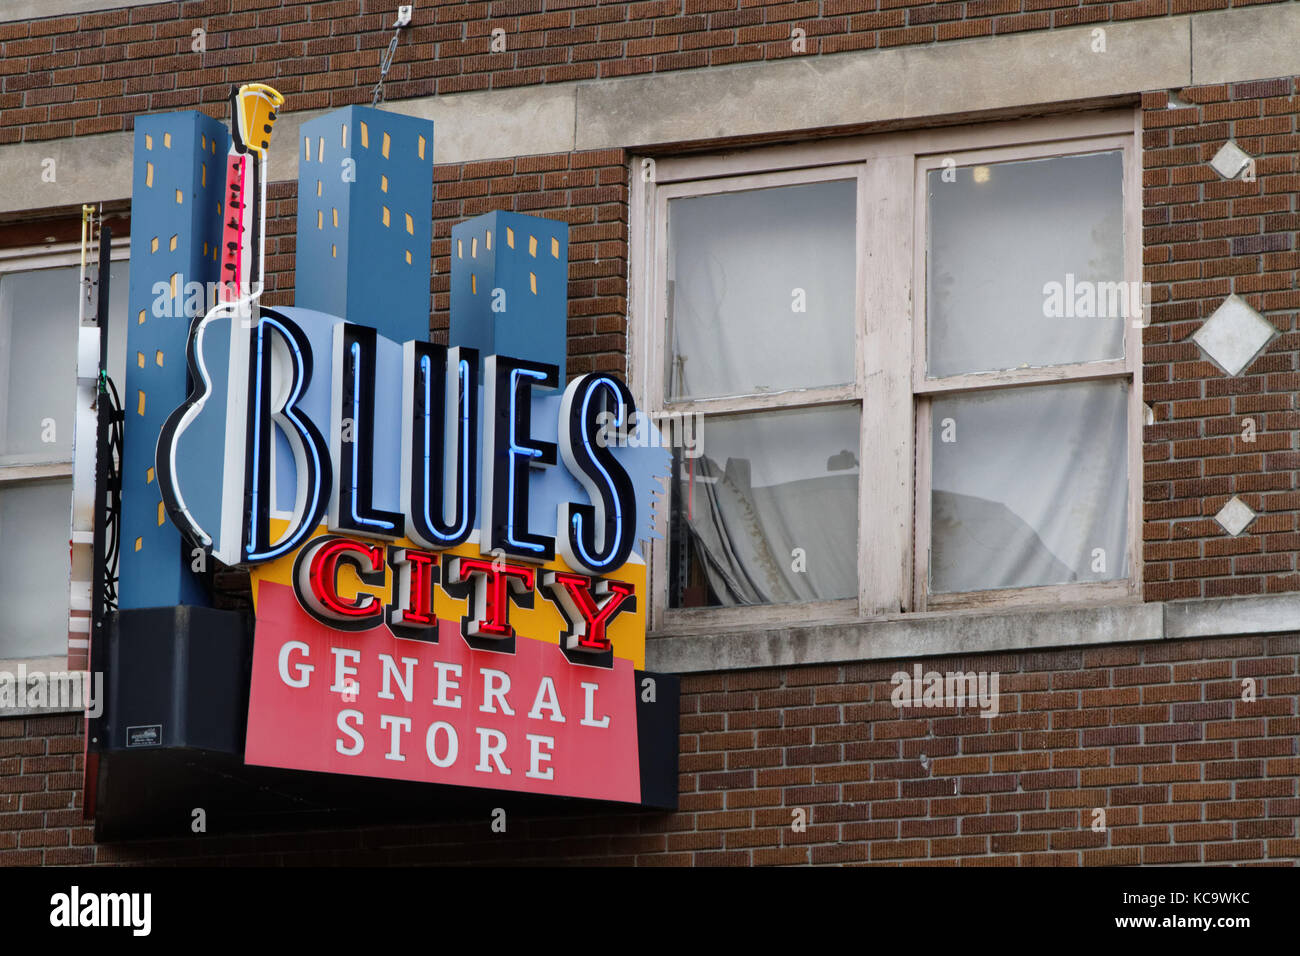 MEMPHIS, Tennessee, le 11 mai 2015 : Ville de néons sur Beale Street. Blues clubs et restaurants qui bordent la rue Beale sont des attractions touristiques Banque D'Images